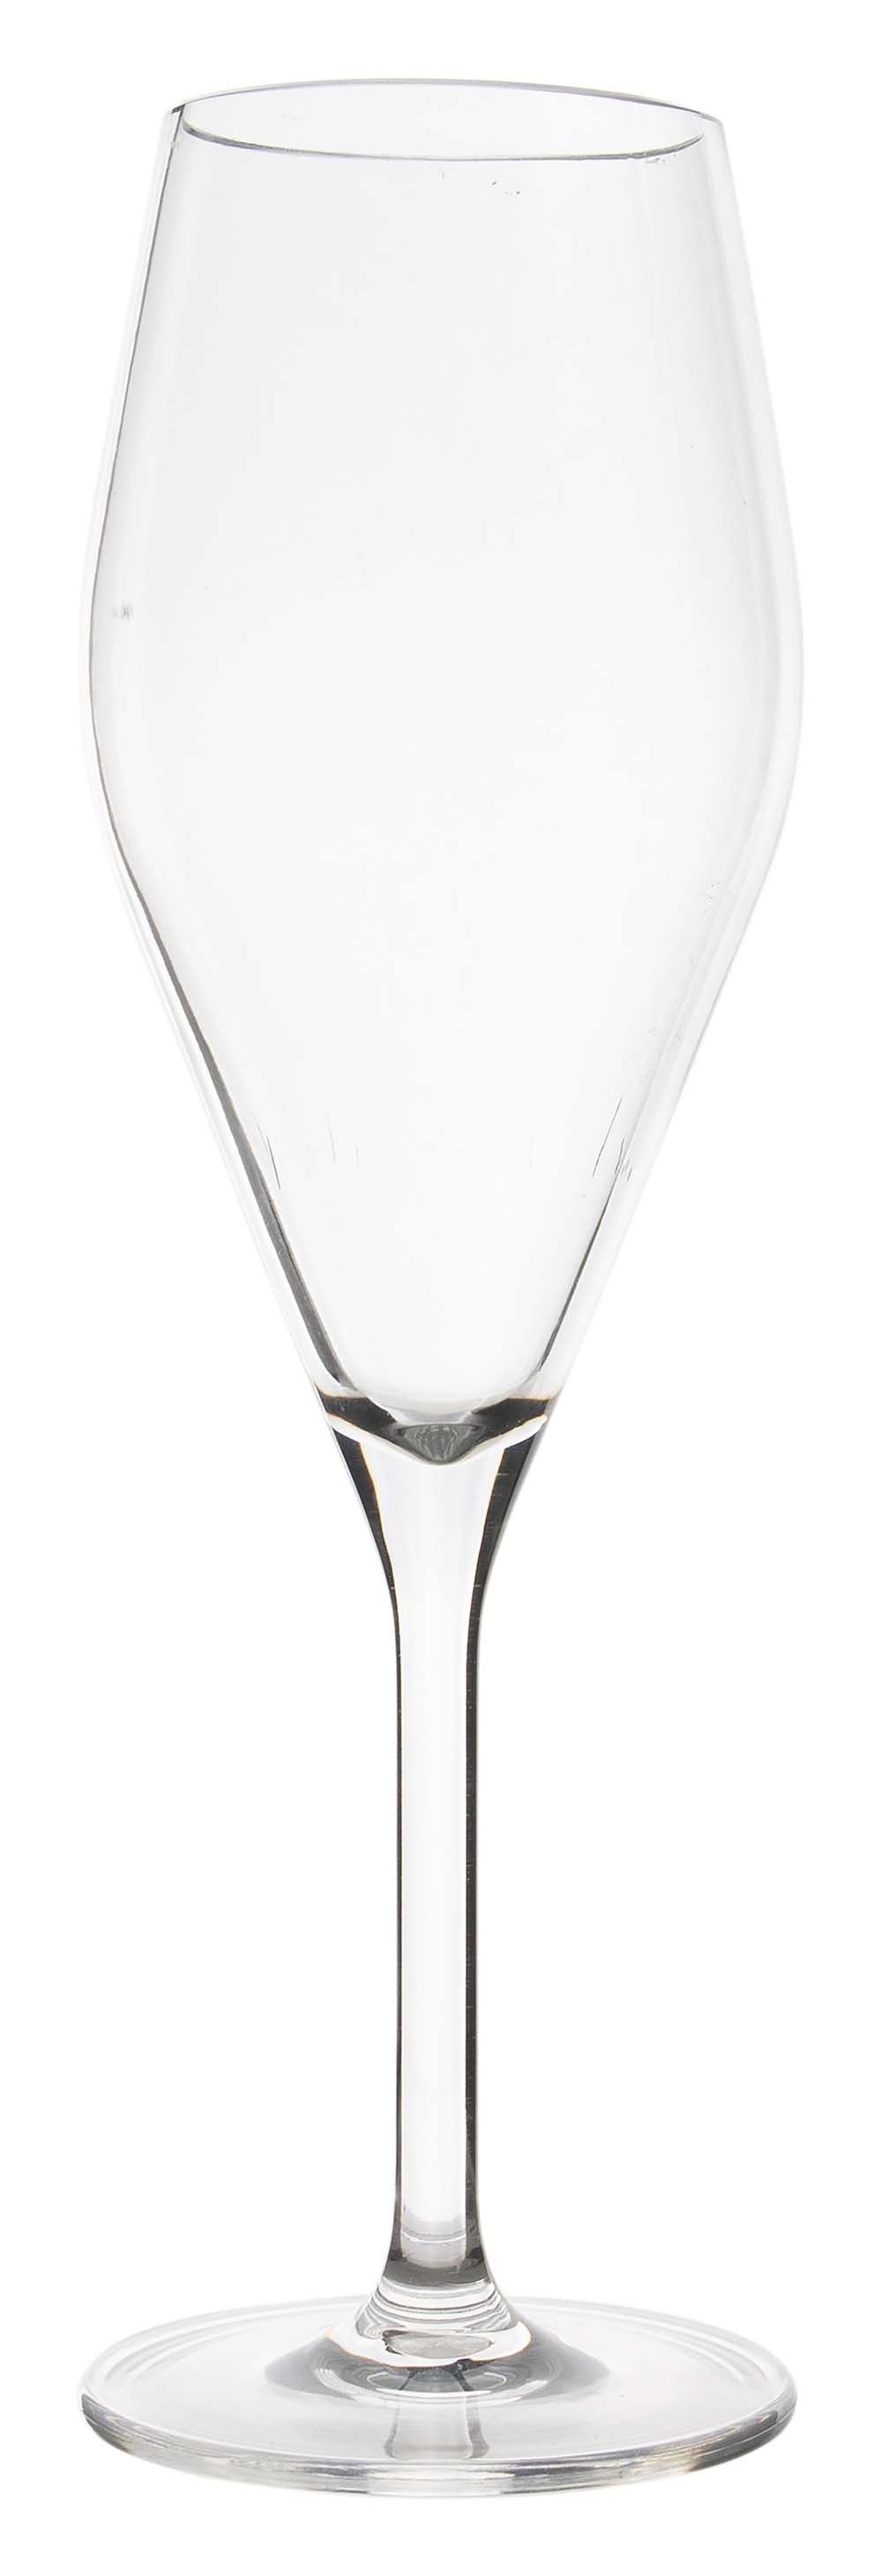 6968926 Een champagneglas uit de Royal line collectie. Vrijwel onbreekbaar door hoogwaardig MS materiaal. Bestaat uit een set van 2 stuks. Zeer gemakkelijk te reinigen en langdurig te gebruiken, wat het glas erg duurzaam maakt. Daarnaast is het champagneglas lichtgewicht en krasbestendig. Inhoud: 250 ml.